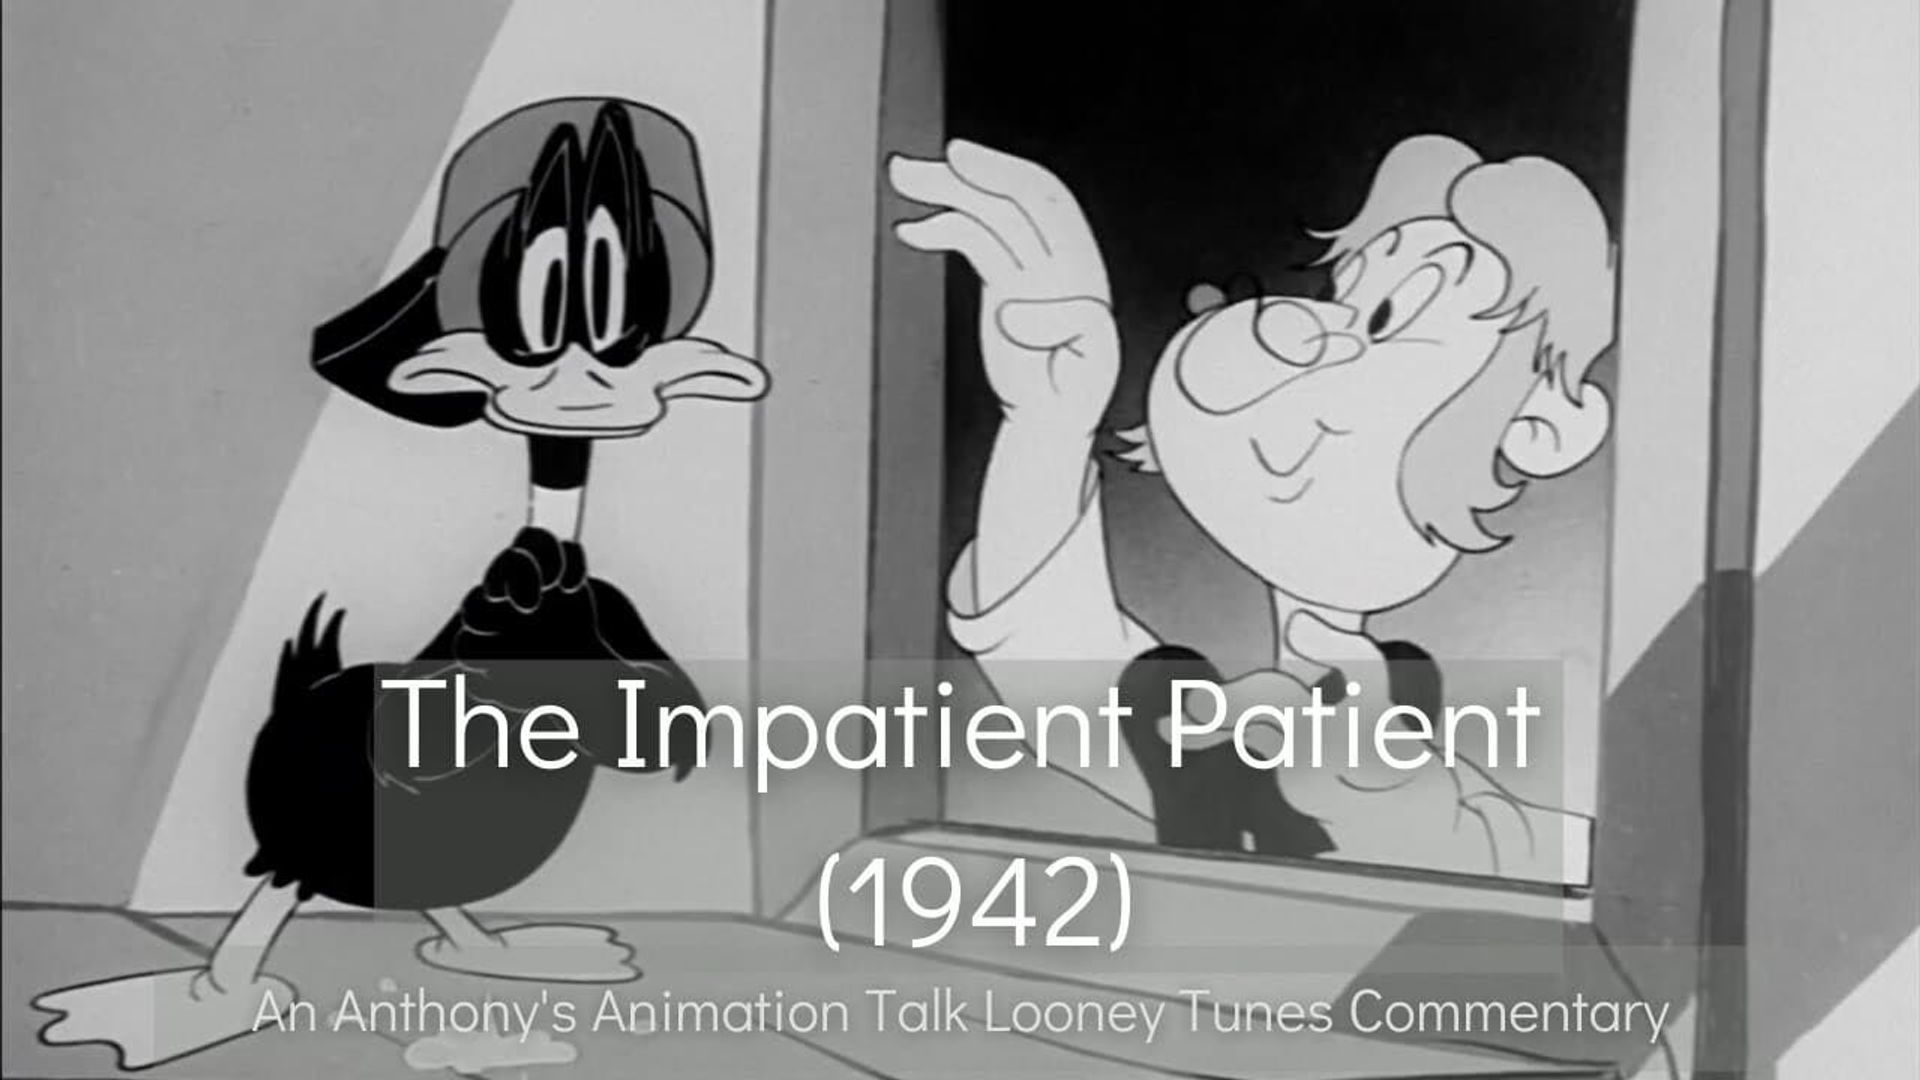 The Impatient Patient background